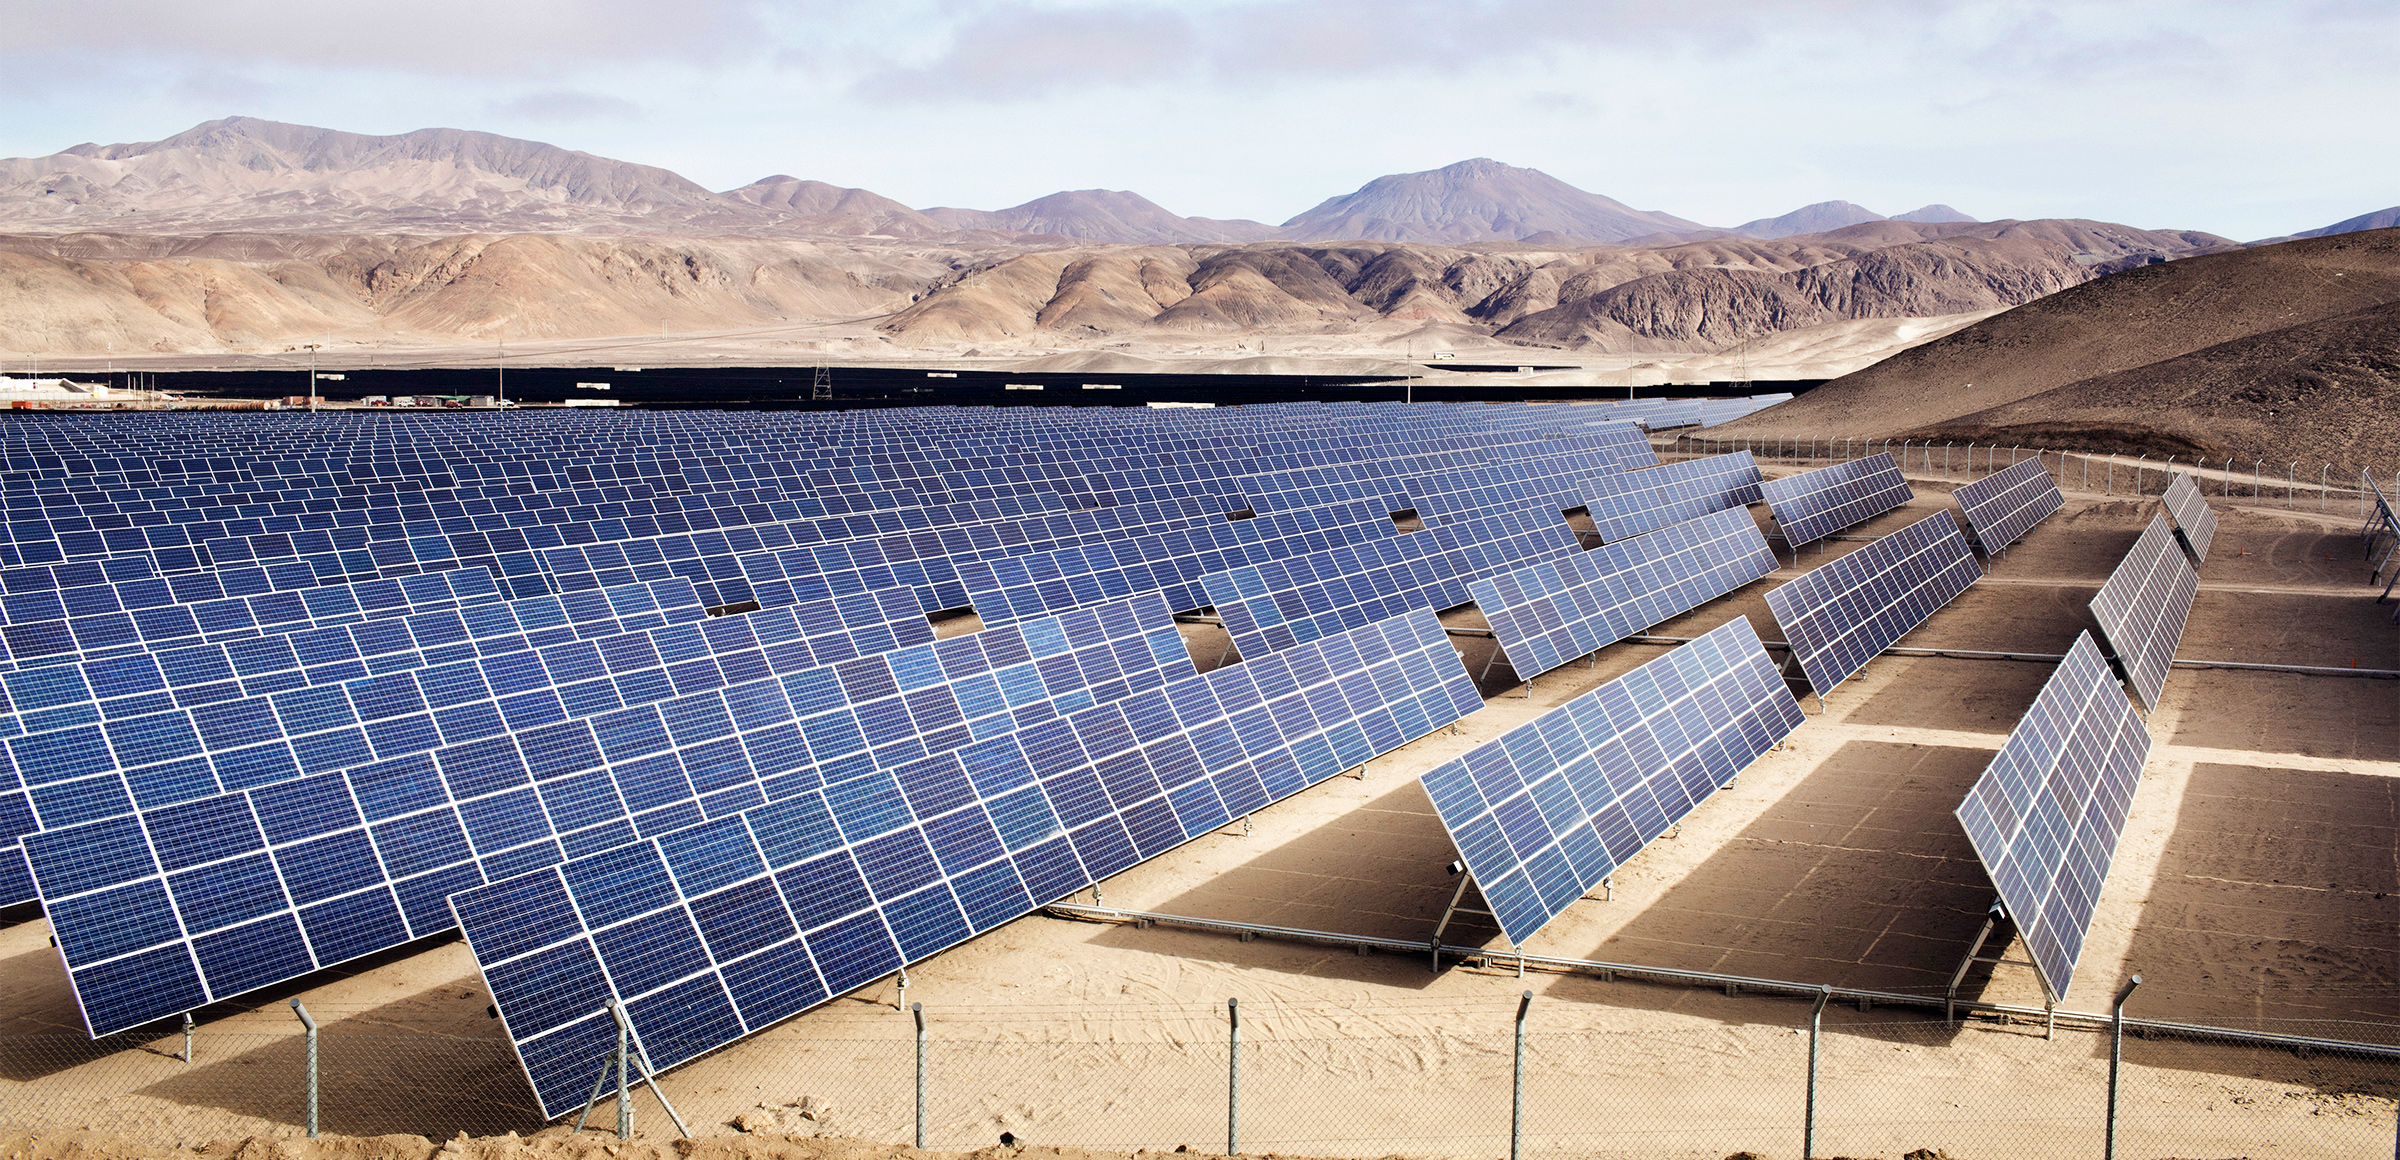 araniroo نیروگاه خورشیدی - فرصت محدود احداث نیروگاه خورشیدی در میان نوسانات ارز و افزایش هزینه های ساخت و ساز